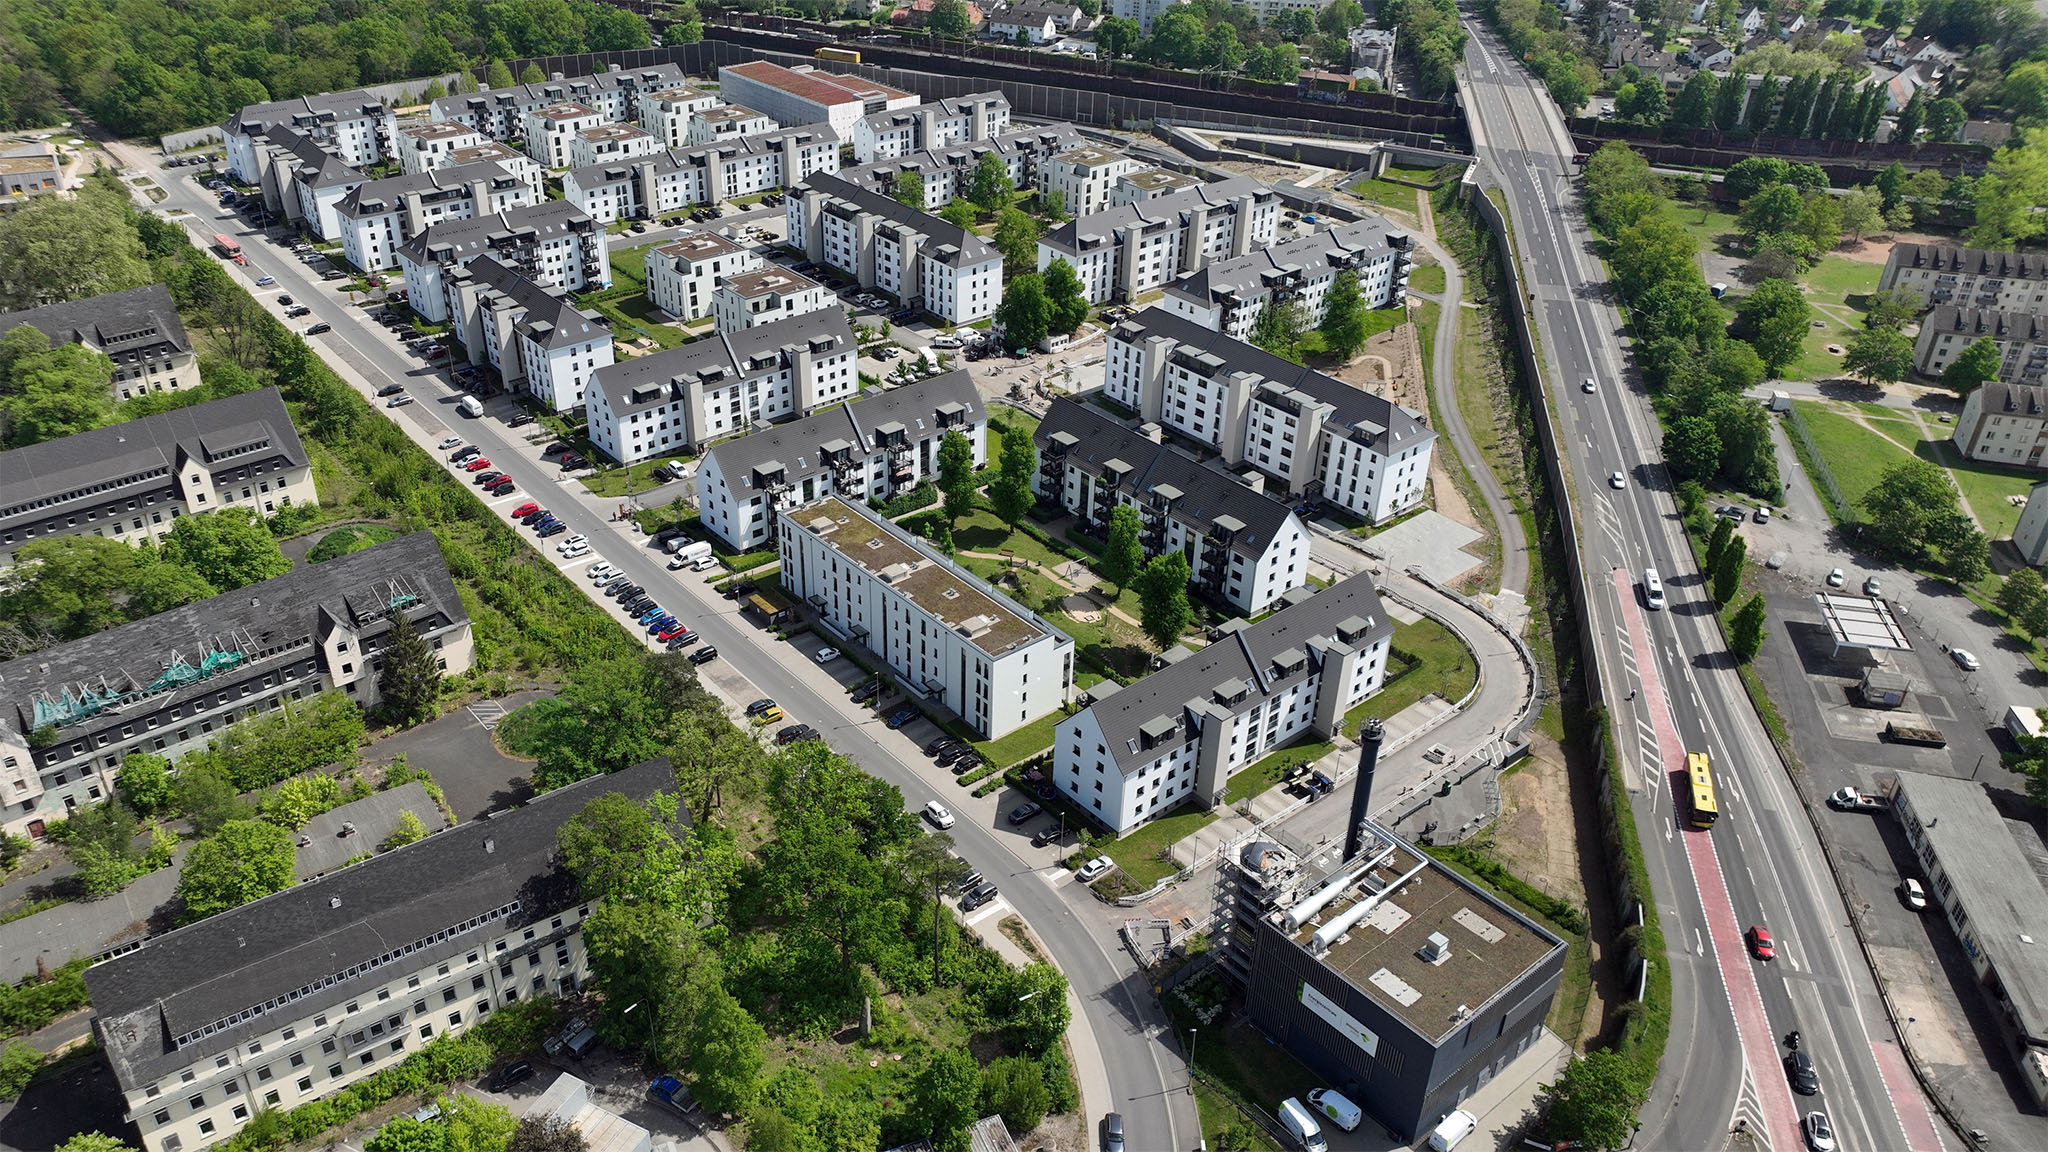 An aerial view of the Pioneer Park in Hanau.